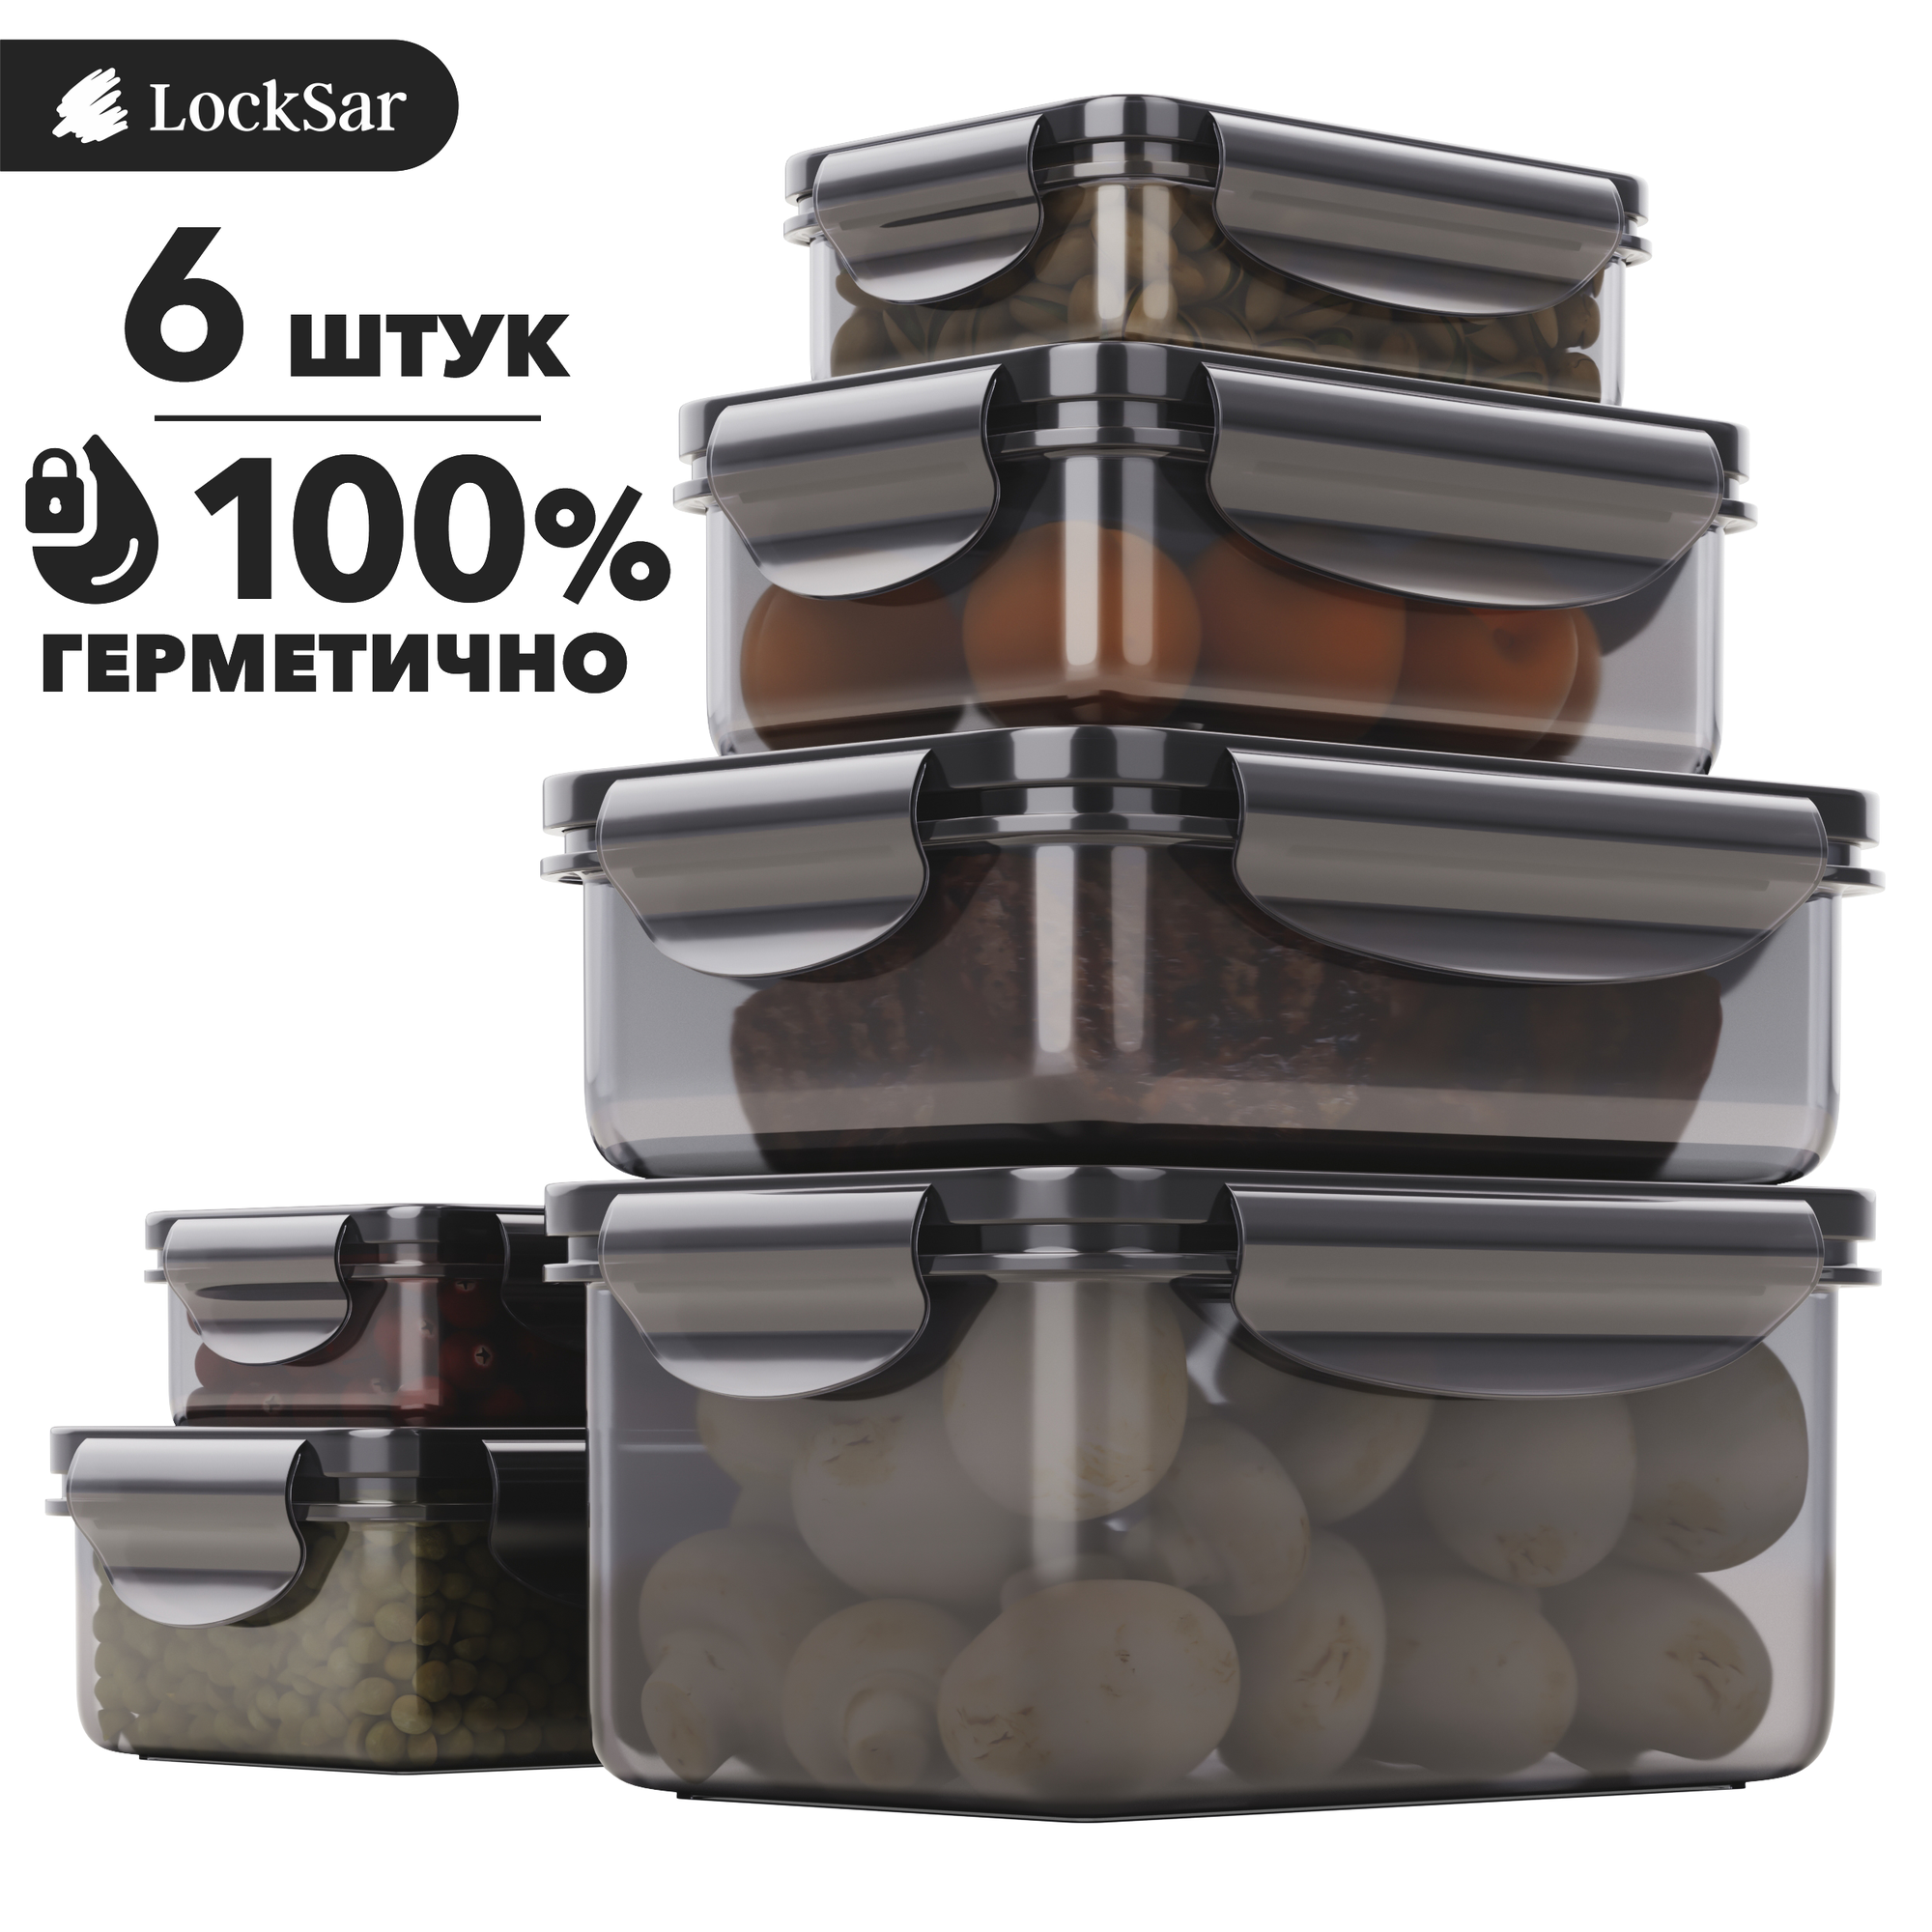 Контейнер для еды герметичный 6 шт LockSar набор контейнеров для хранения продуктов 0,24 л - 2 шт; 0,5 л - 2 шт; 1 л - 1 шт; 1,5 л - 1 шт цвет дымчатый